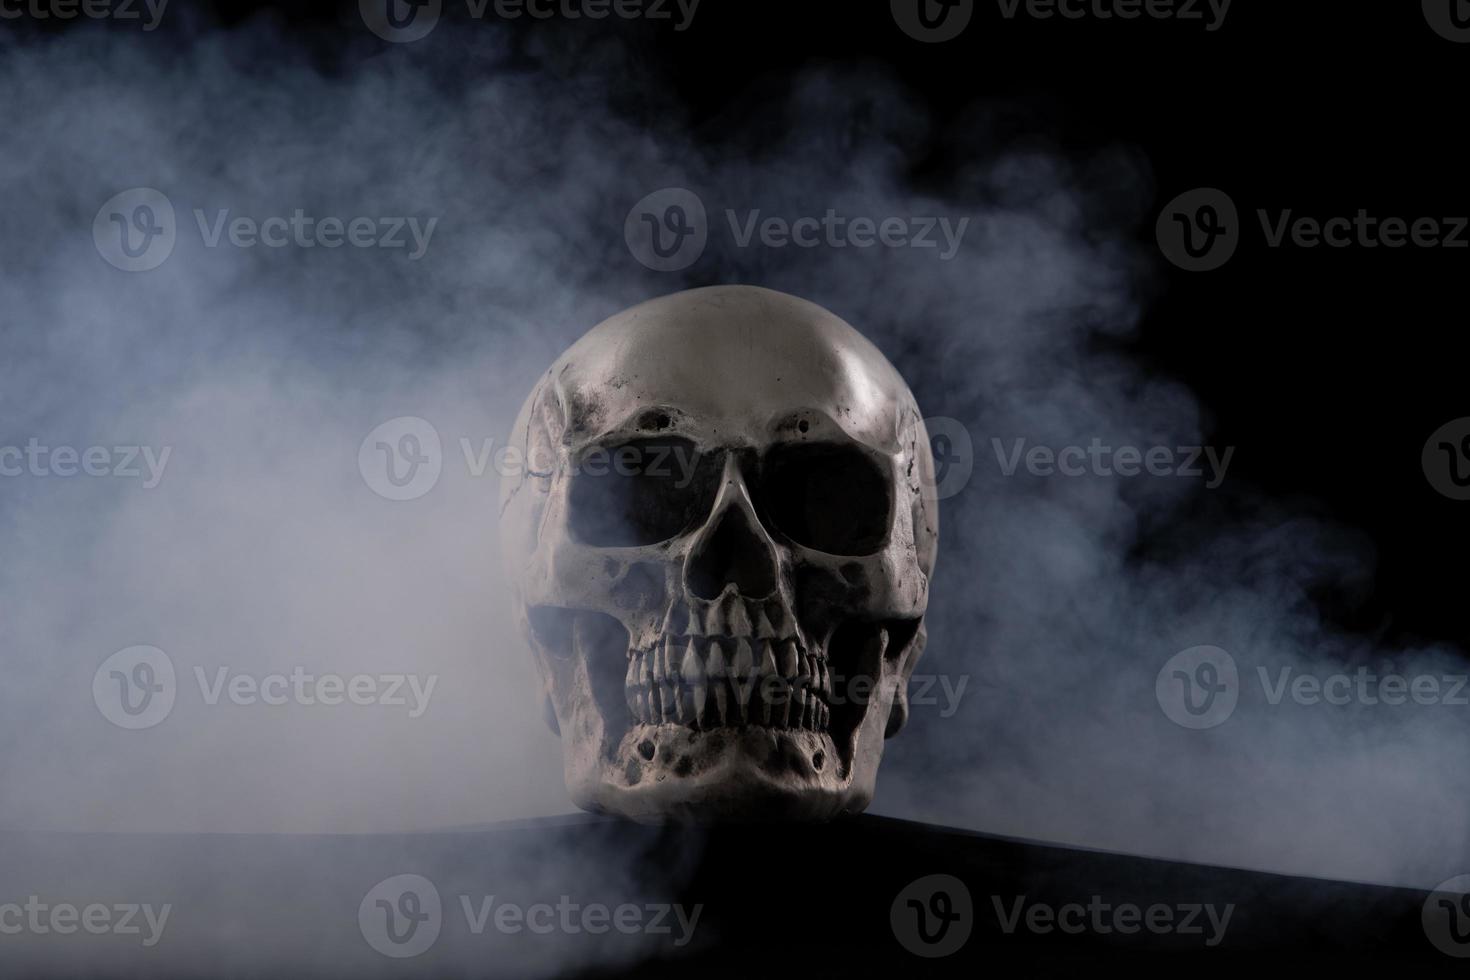 crâne humain halloween sur une vieille table en bois sur fond noir. forme d'os du crâne pour la tête de mort sur le festival d'halloween qui montre l'horreur de la peur et de l'effrayant des dents maléfiques, espace de copie photo